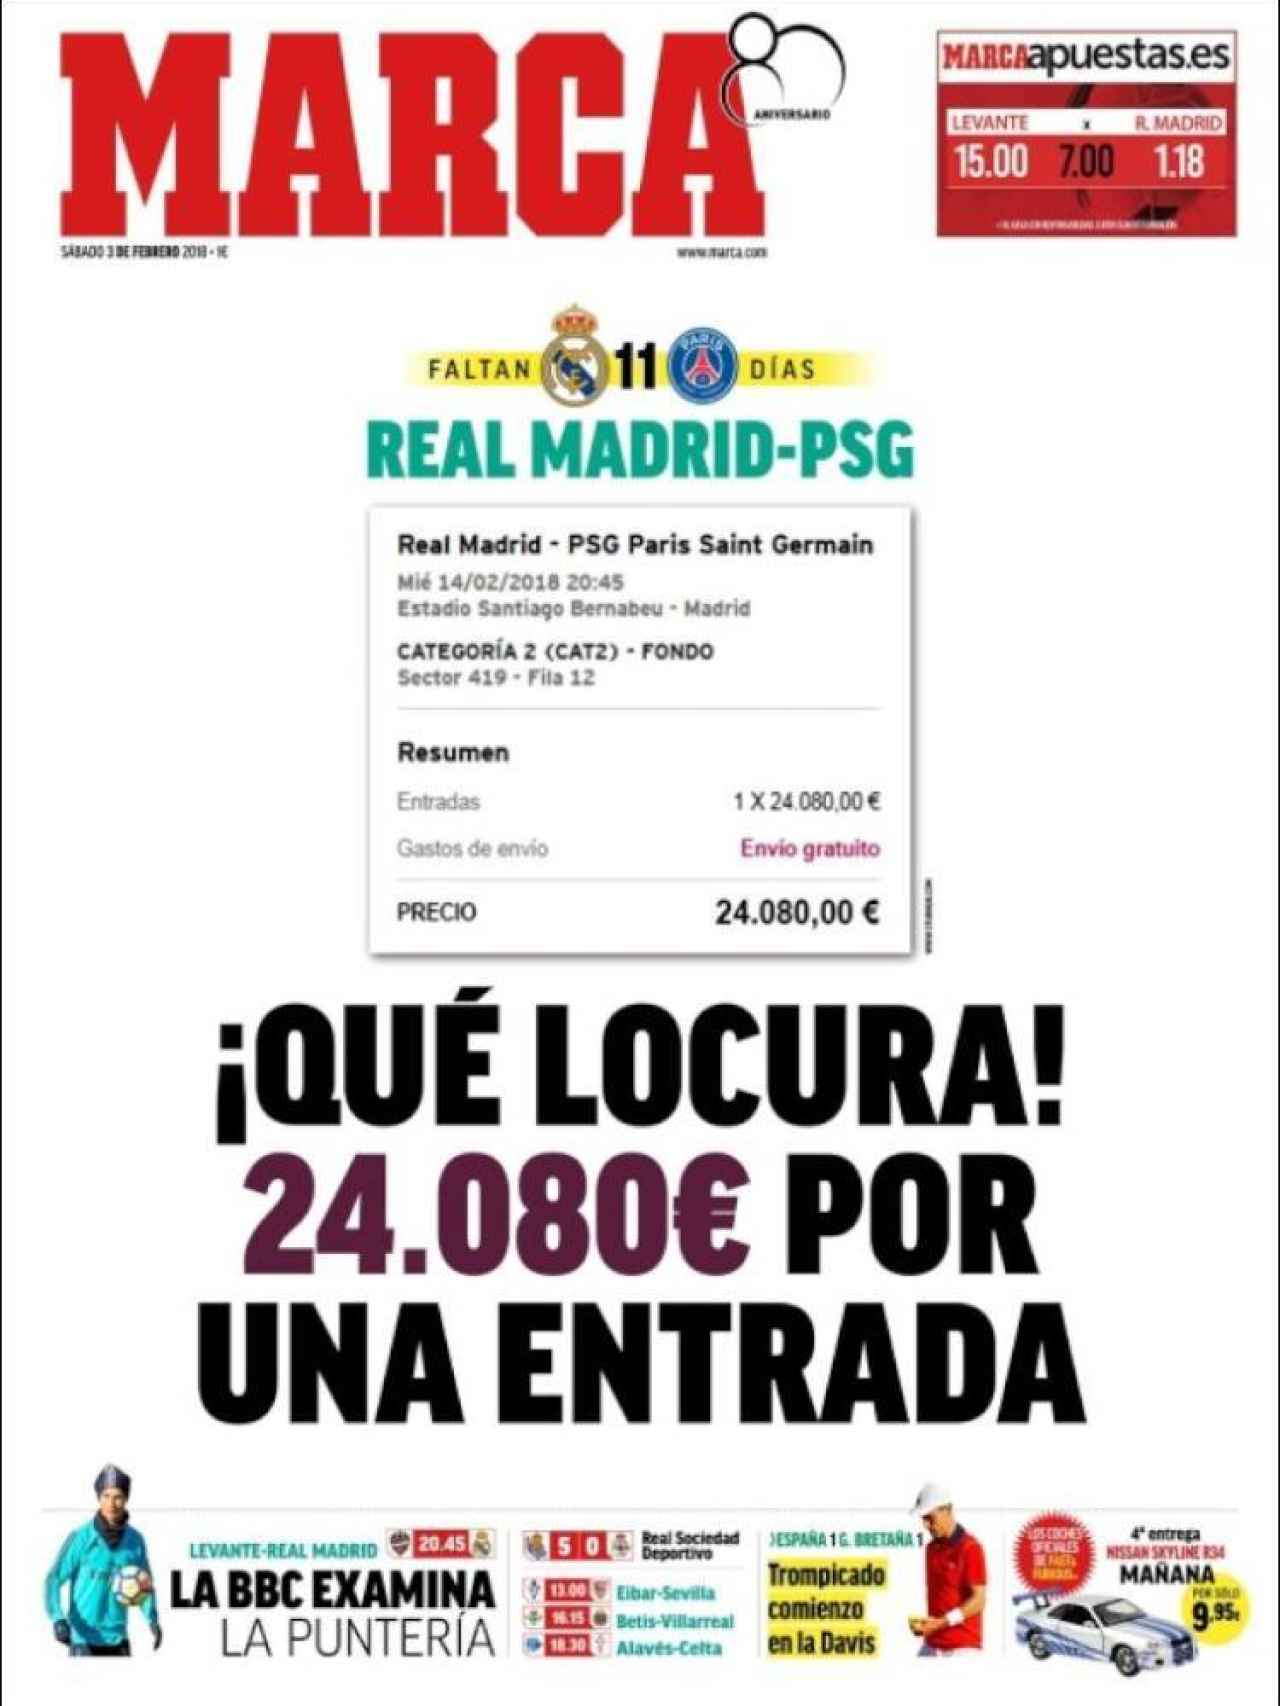 MARCA abre con los elevados precios que se llegan a pagar por una entrada del Real Madrid - PSG.